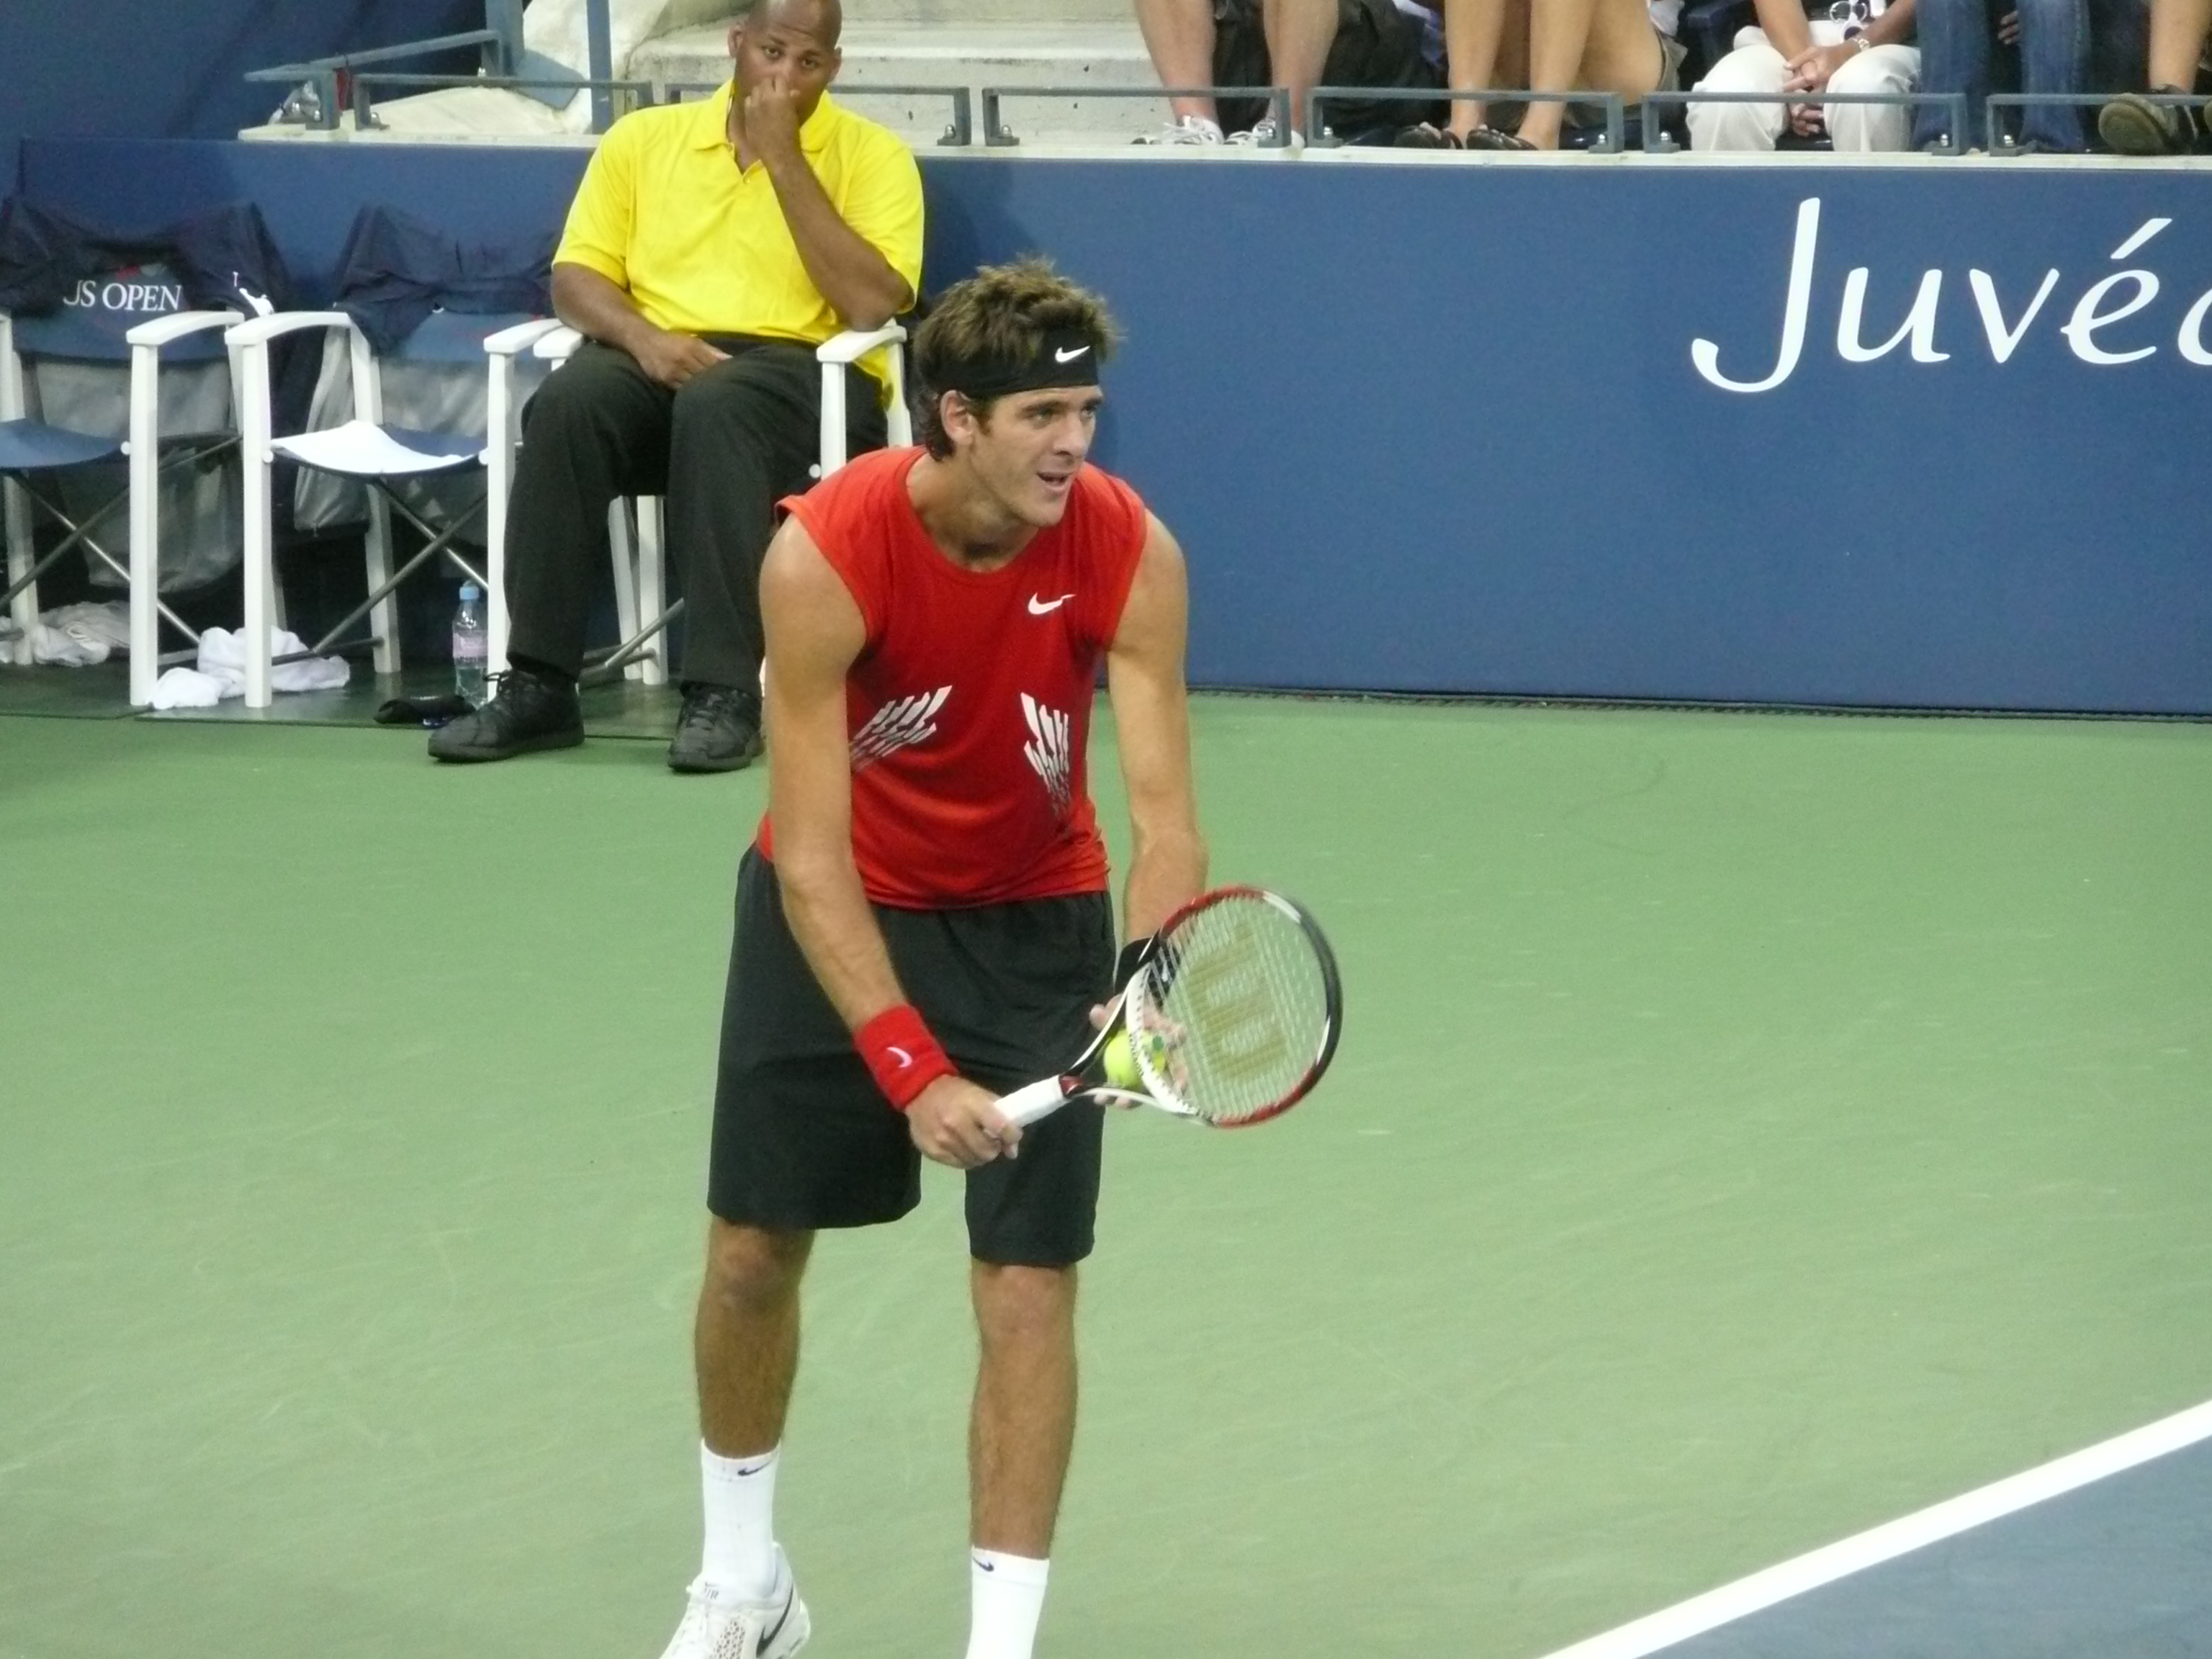 File:Juan Martin del Potro at the 2008 US Open.jpg - Commons